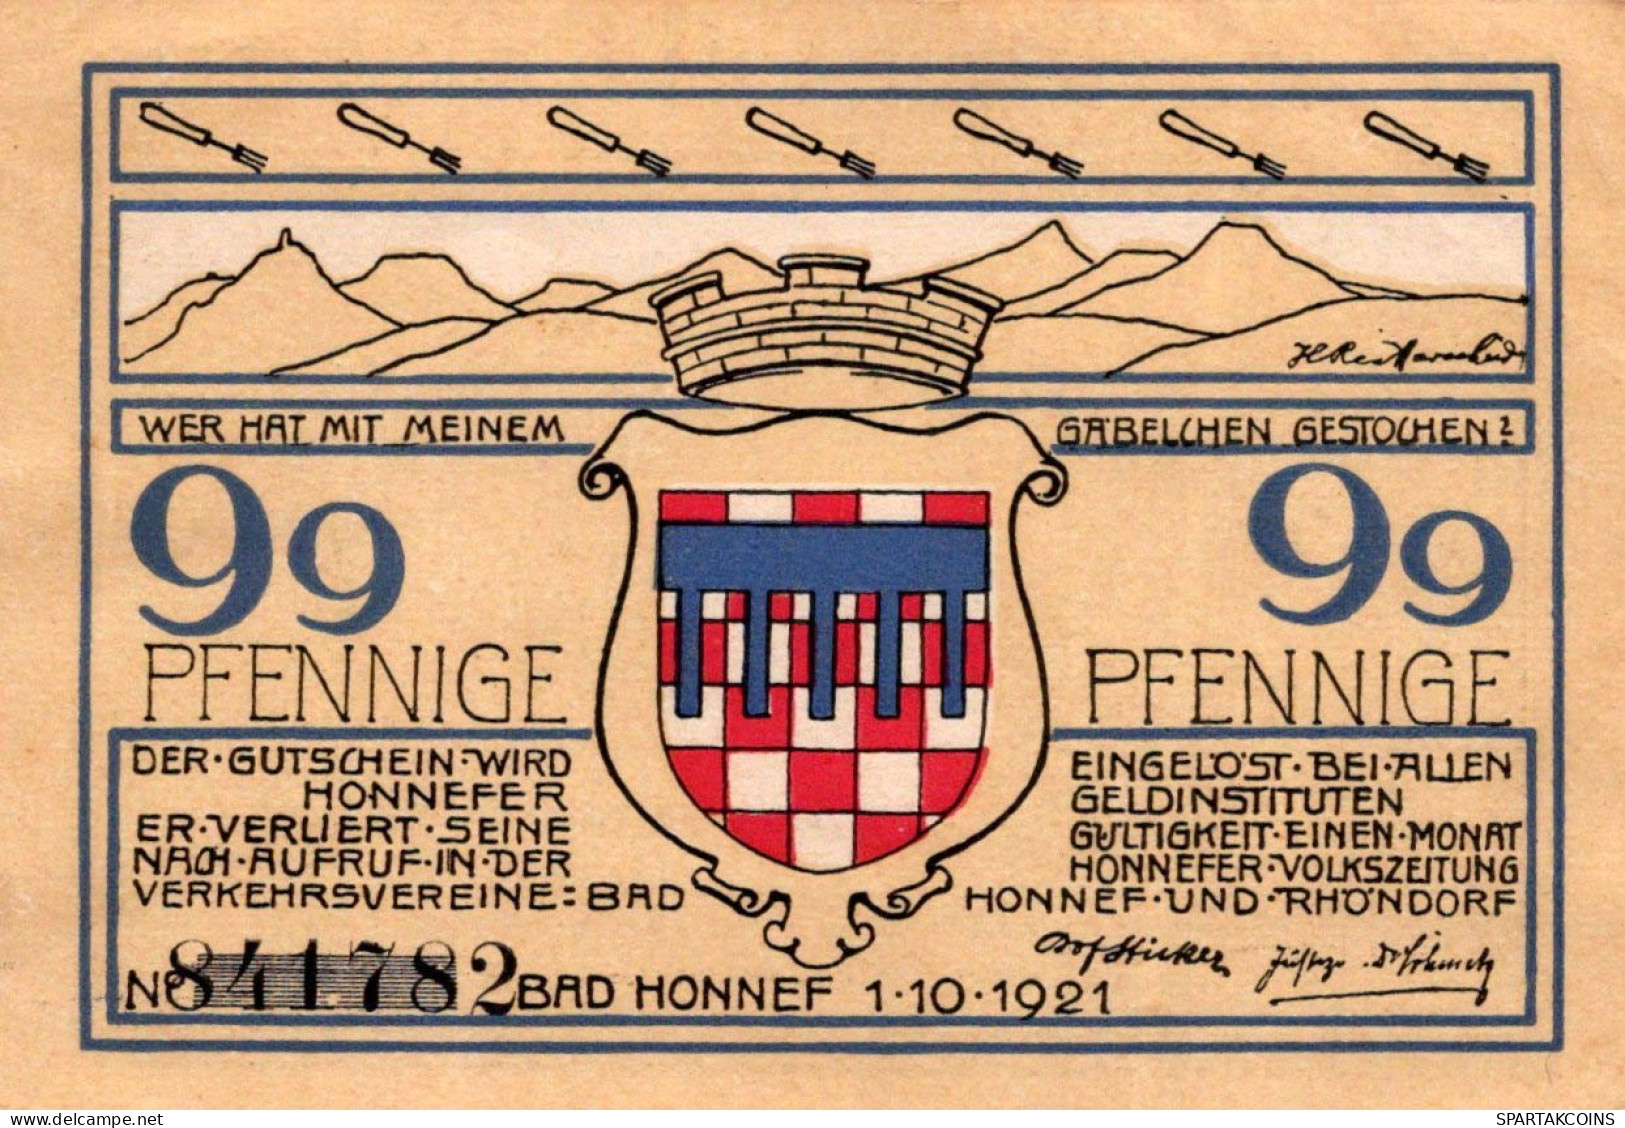 99 PFENNIG 1921 Stadt BAD HONNEF Rhine DEUTSCHLAND Notgeld Banknote #PF999 - Lokale Ausgaben